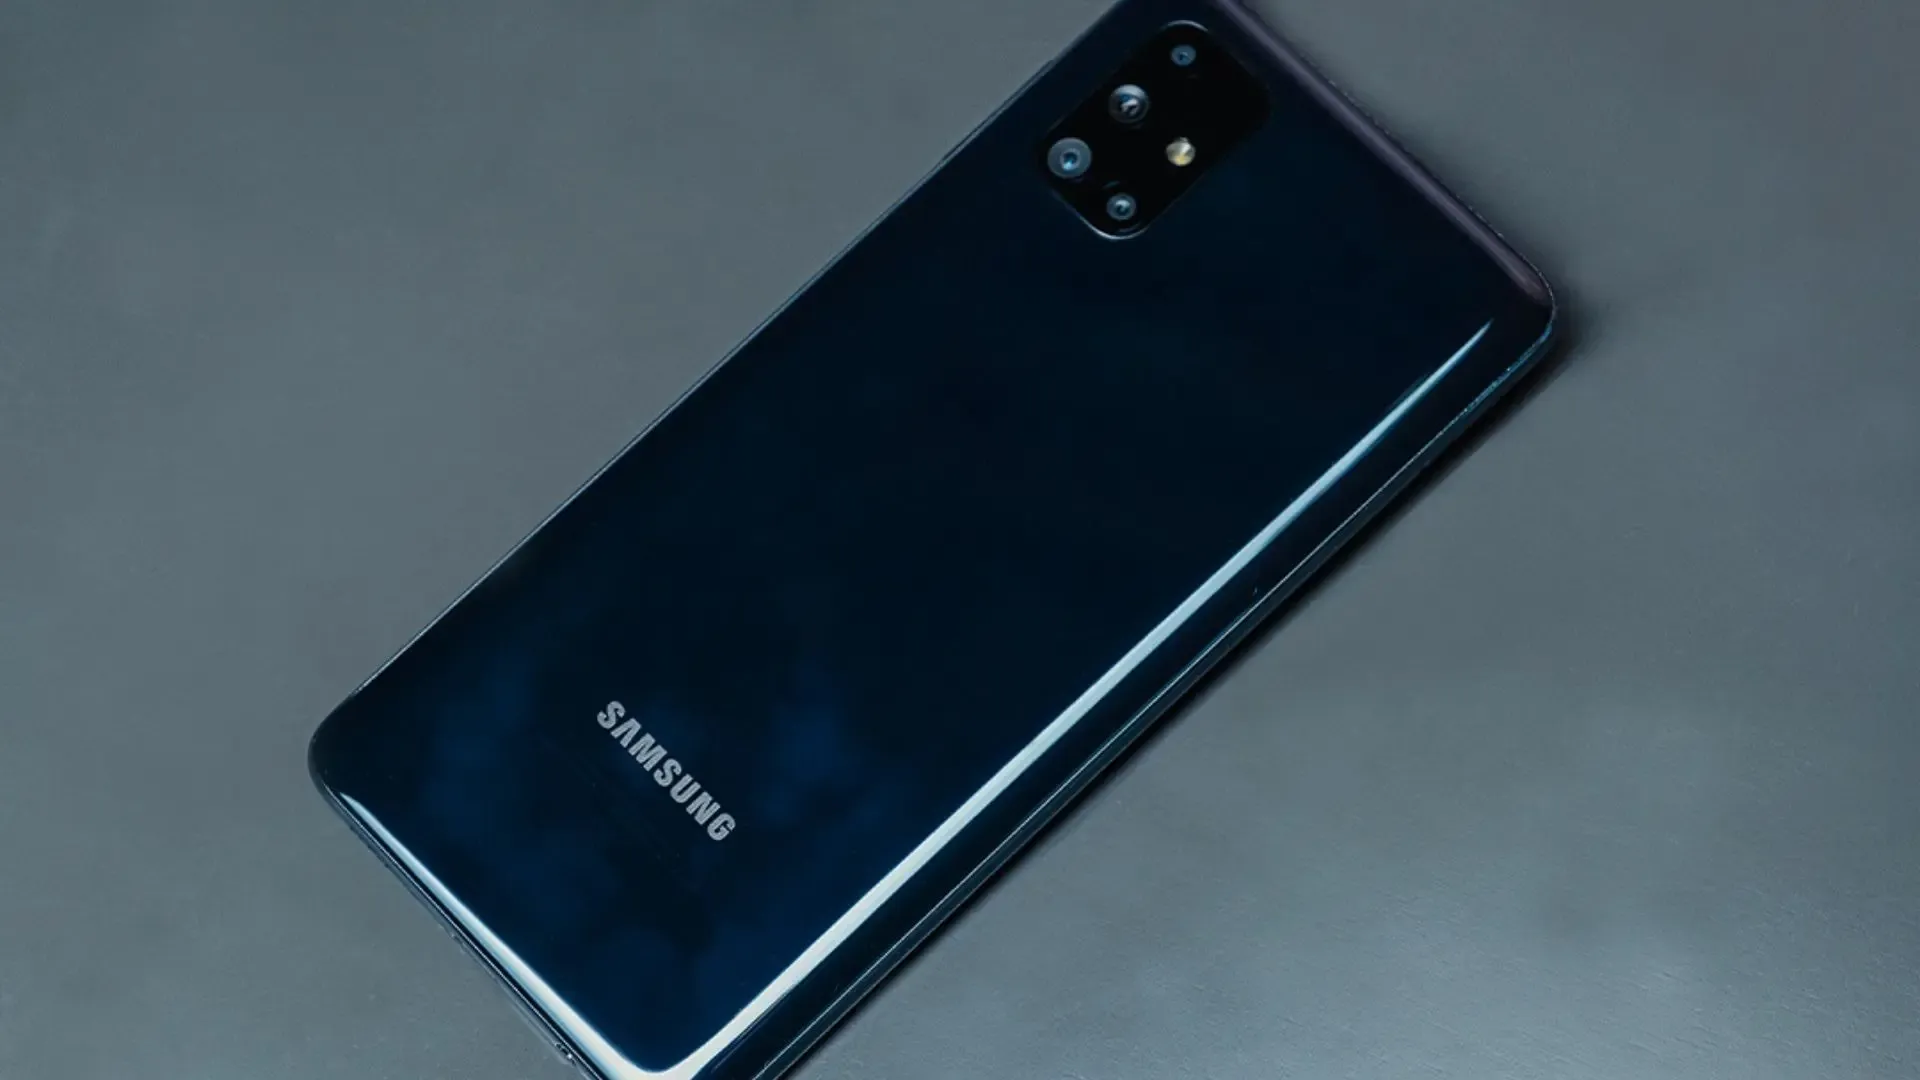 Parte traseira do celular com conjunto de câmeras e o logo da Samsung